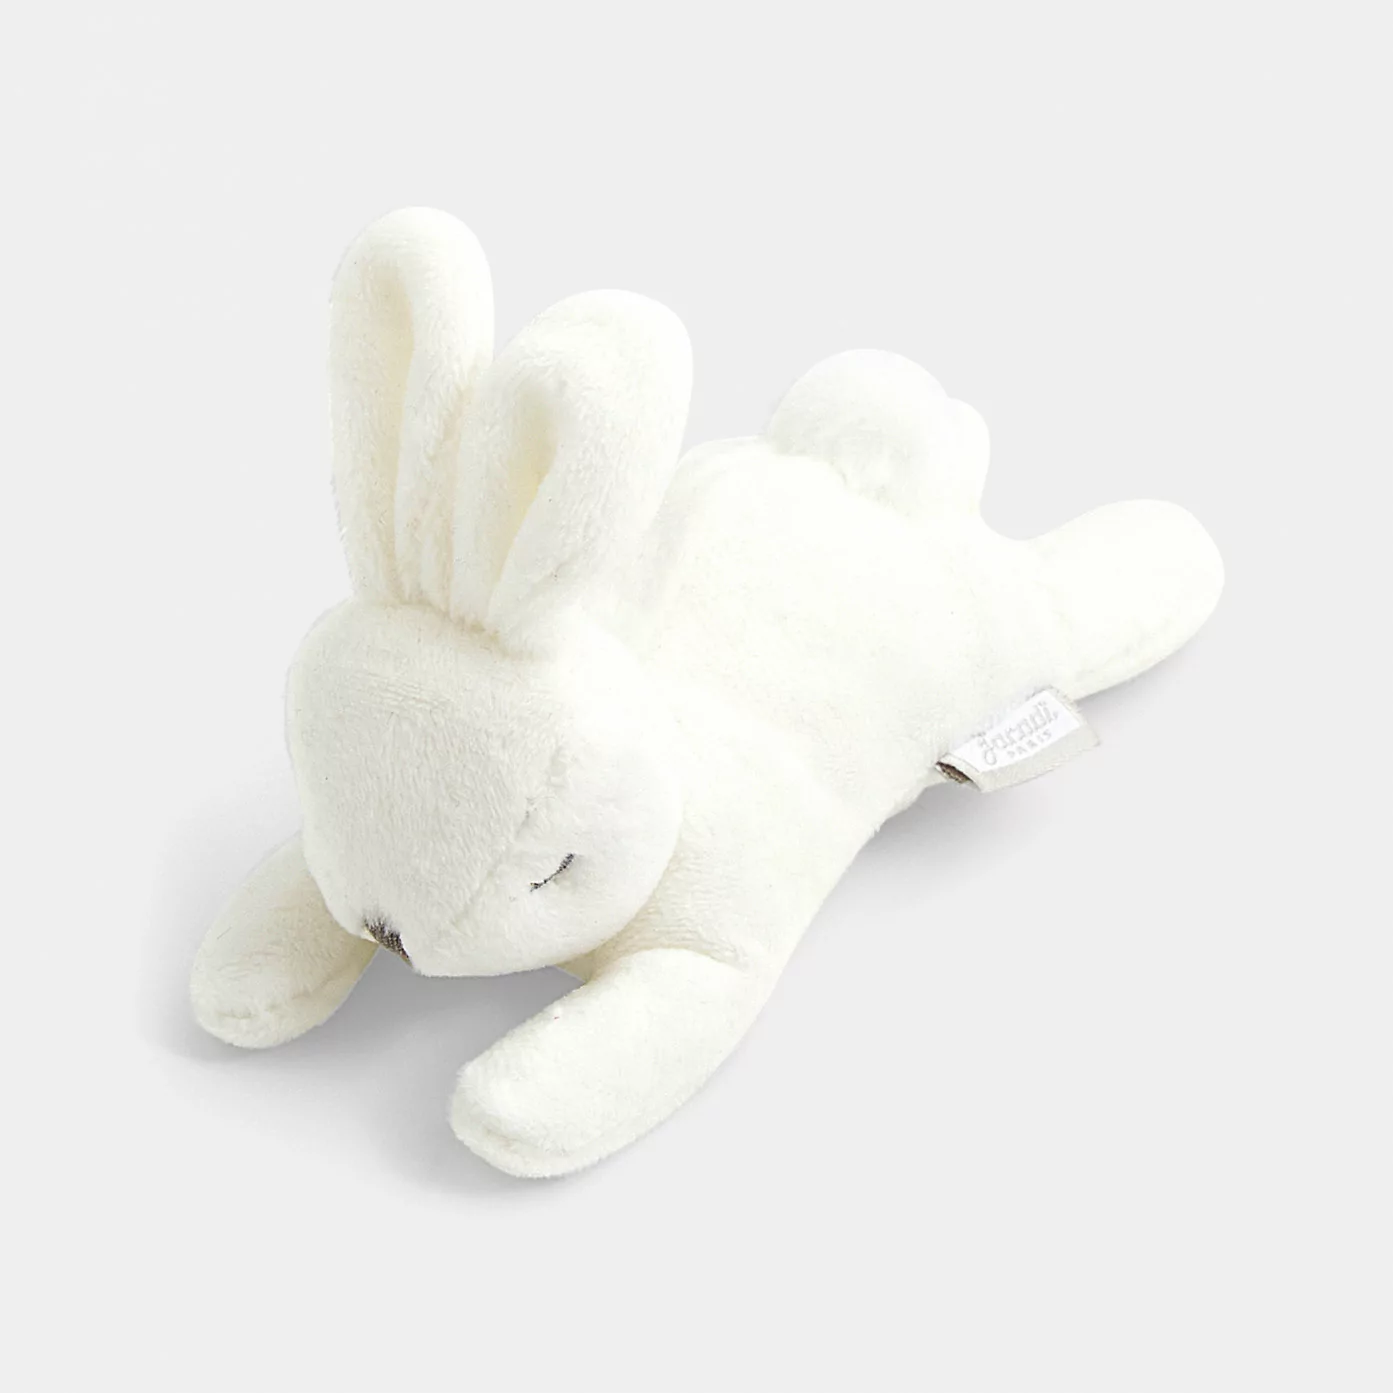 Rabbit soft toy